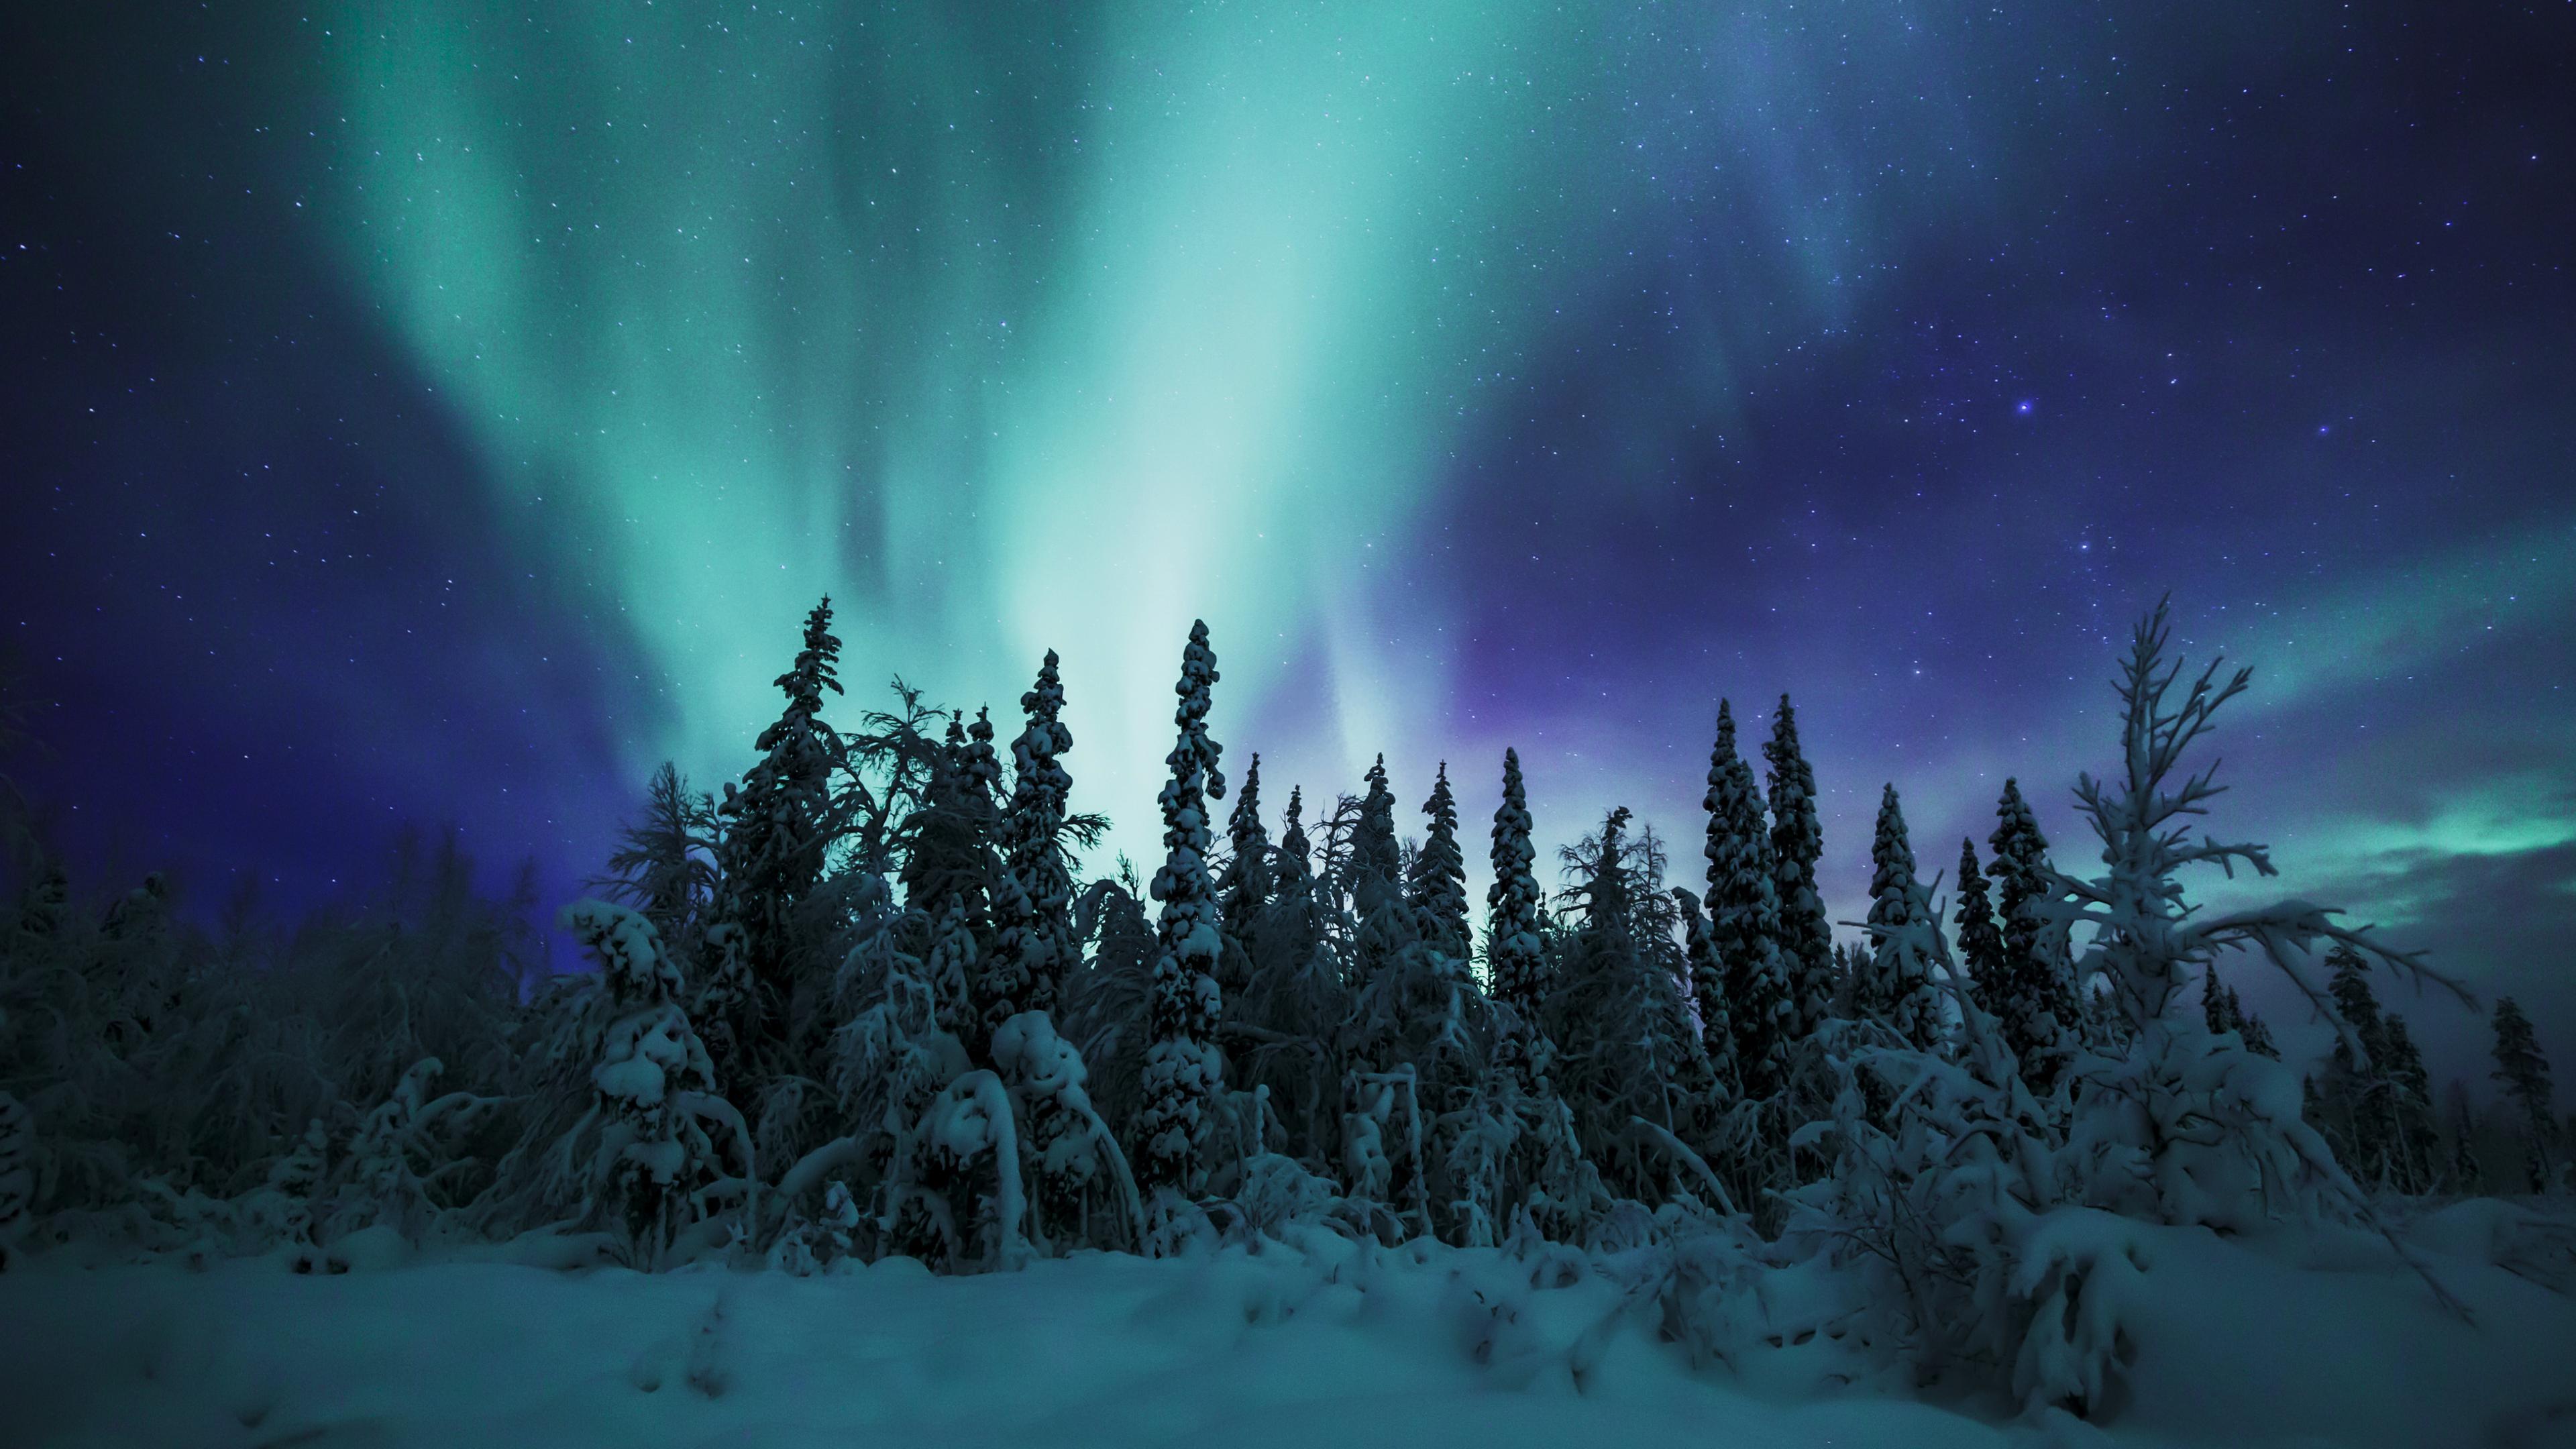 Nachtaufnahme von Polarlicht am Himmel über verschneitem Wald.